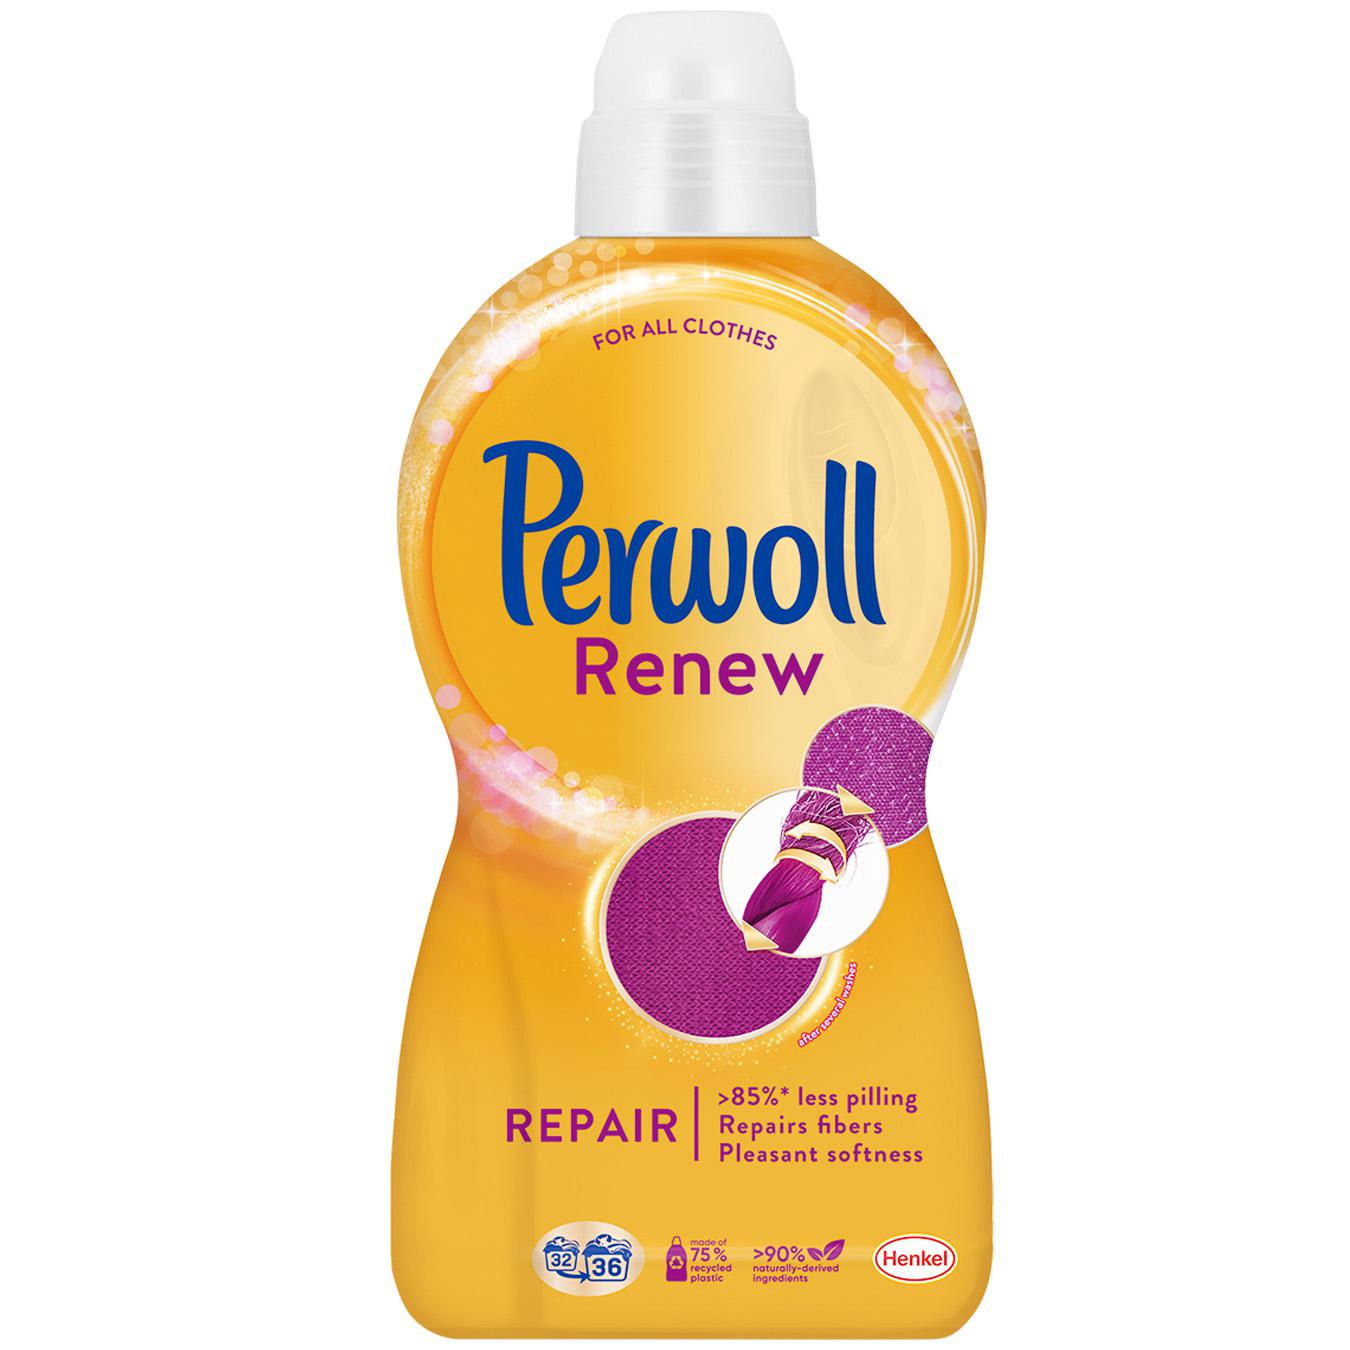 Perwoll daily washing gel 1,980 l